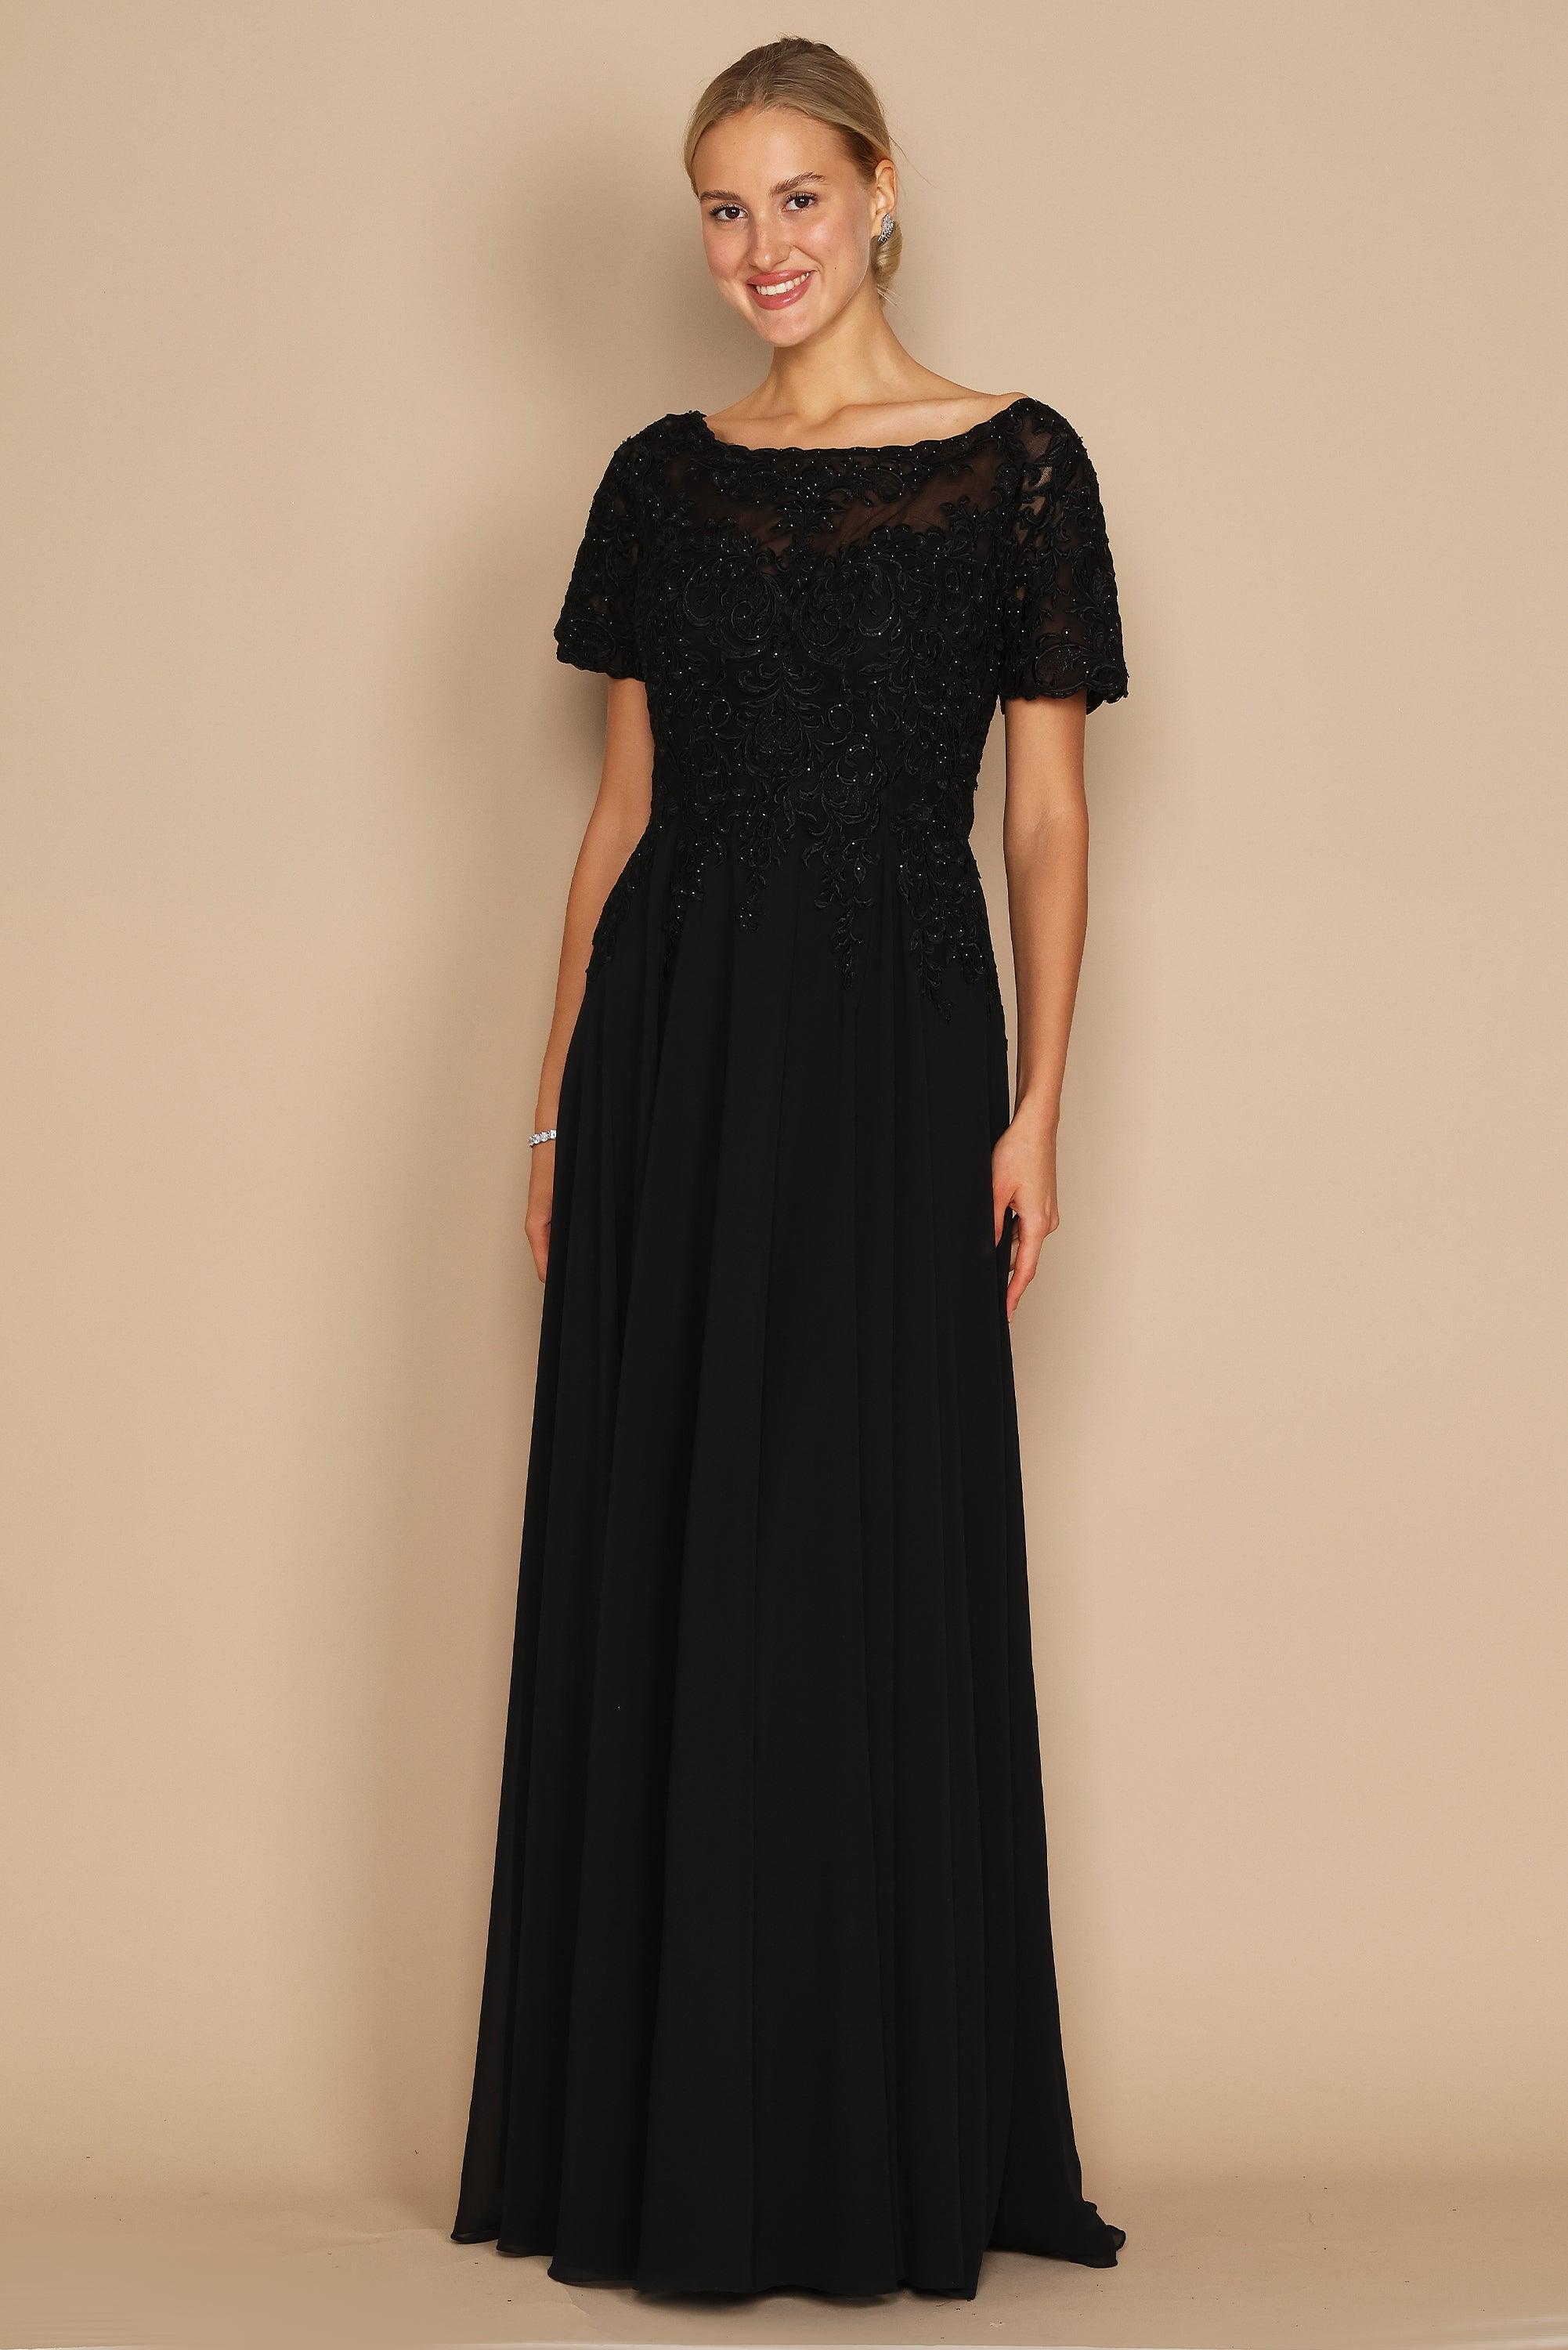 Formal Dresses Short Sleeve Mother of the Bride Formal Dress Black